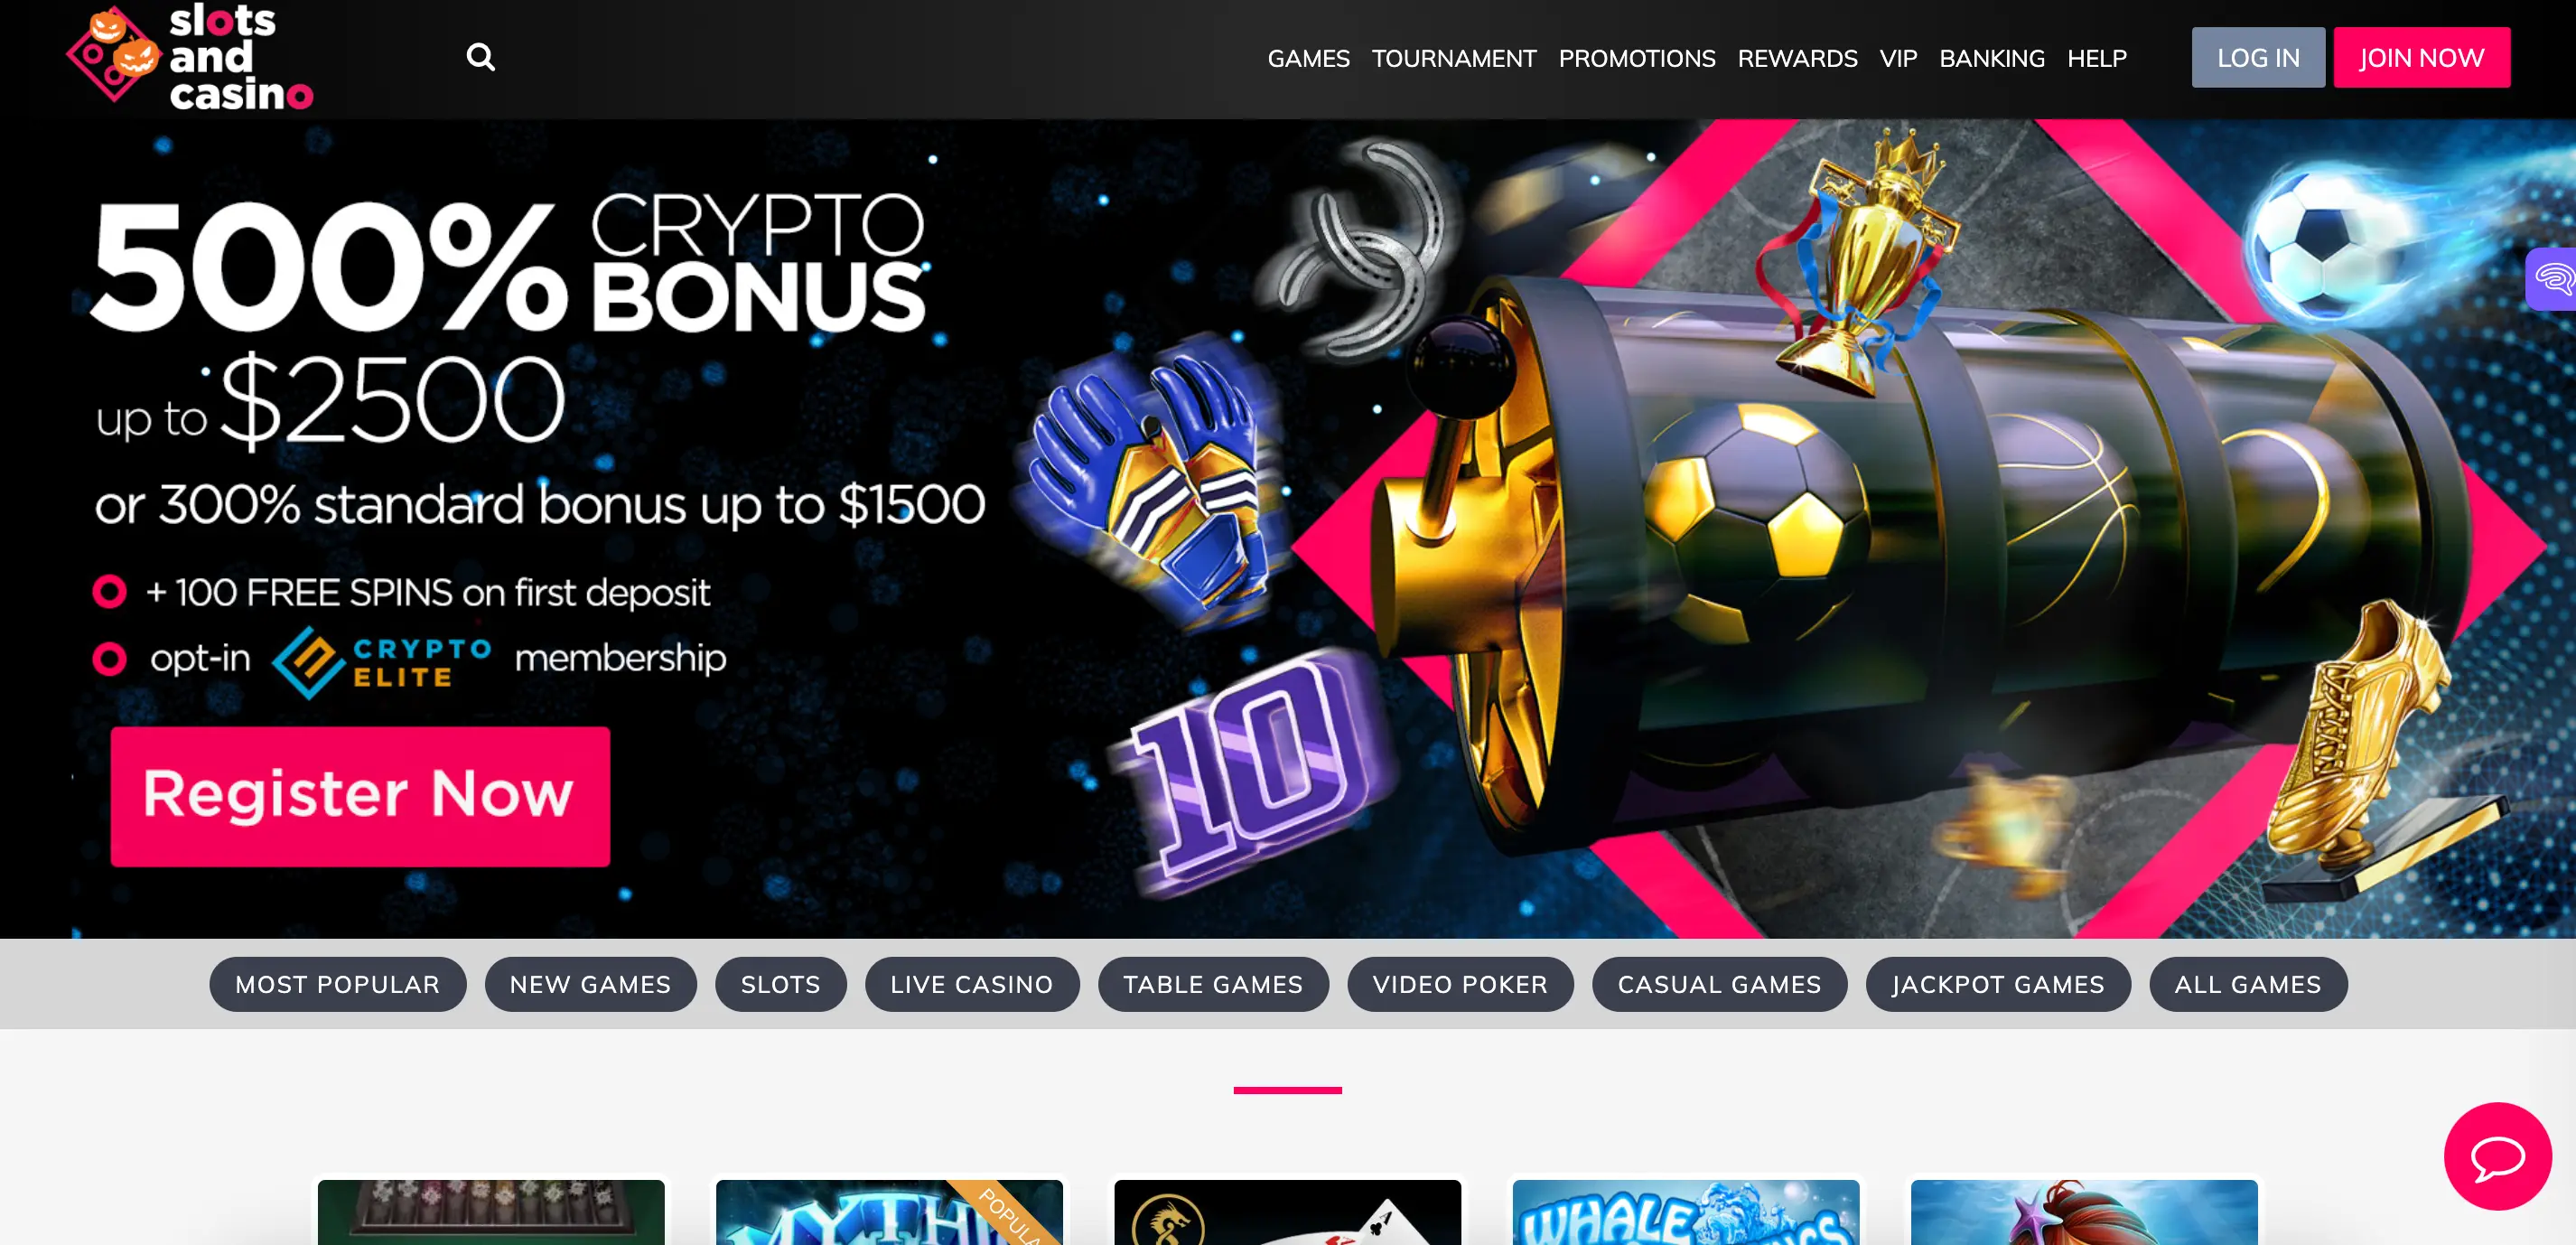 SlotsandCasino Online Casino Bonus